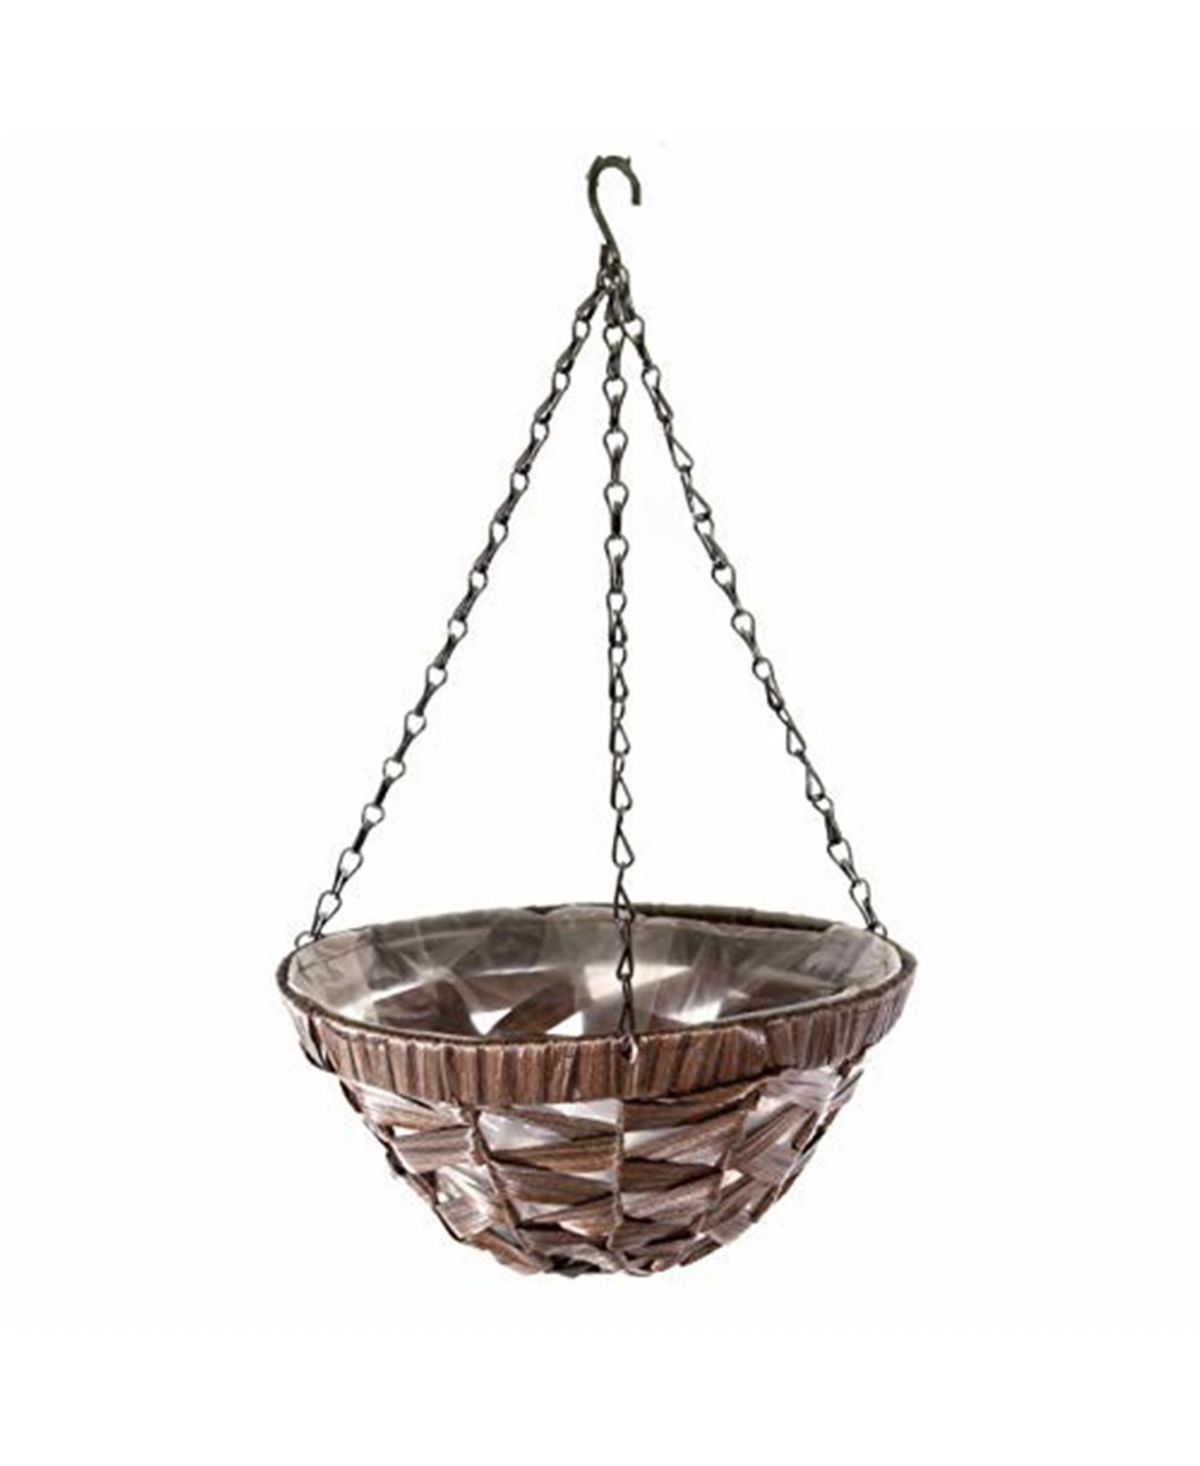 Woven Plastic Wicker Hanging Basket, Coffee Wicker - Brown